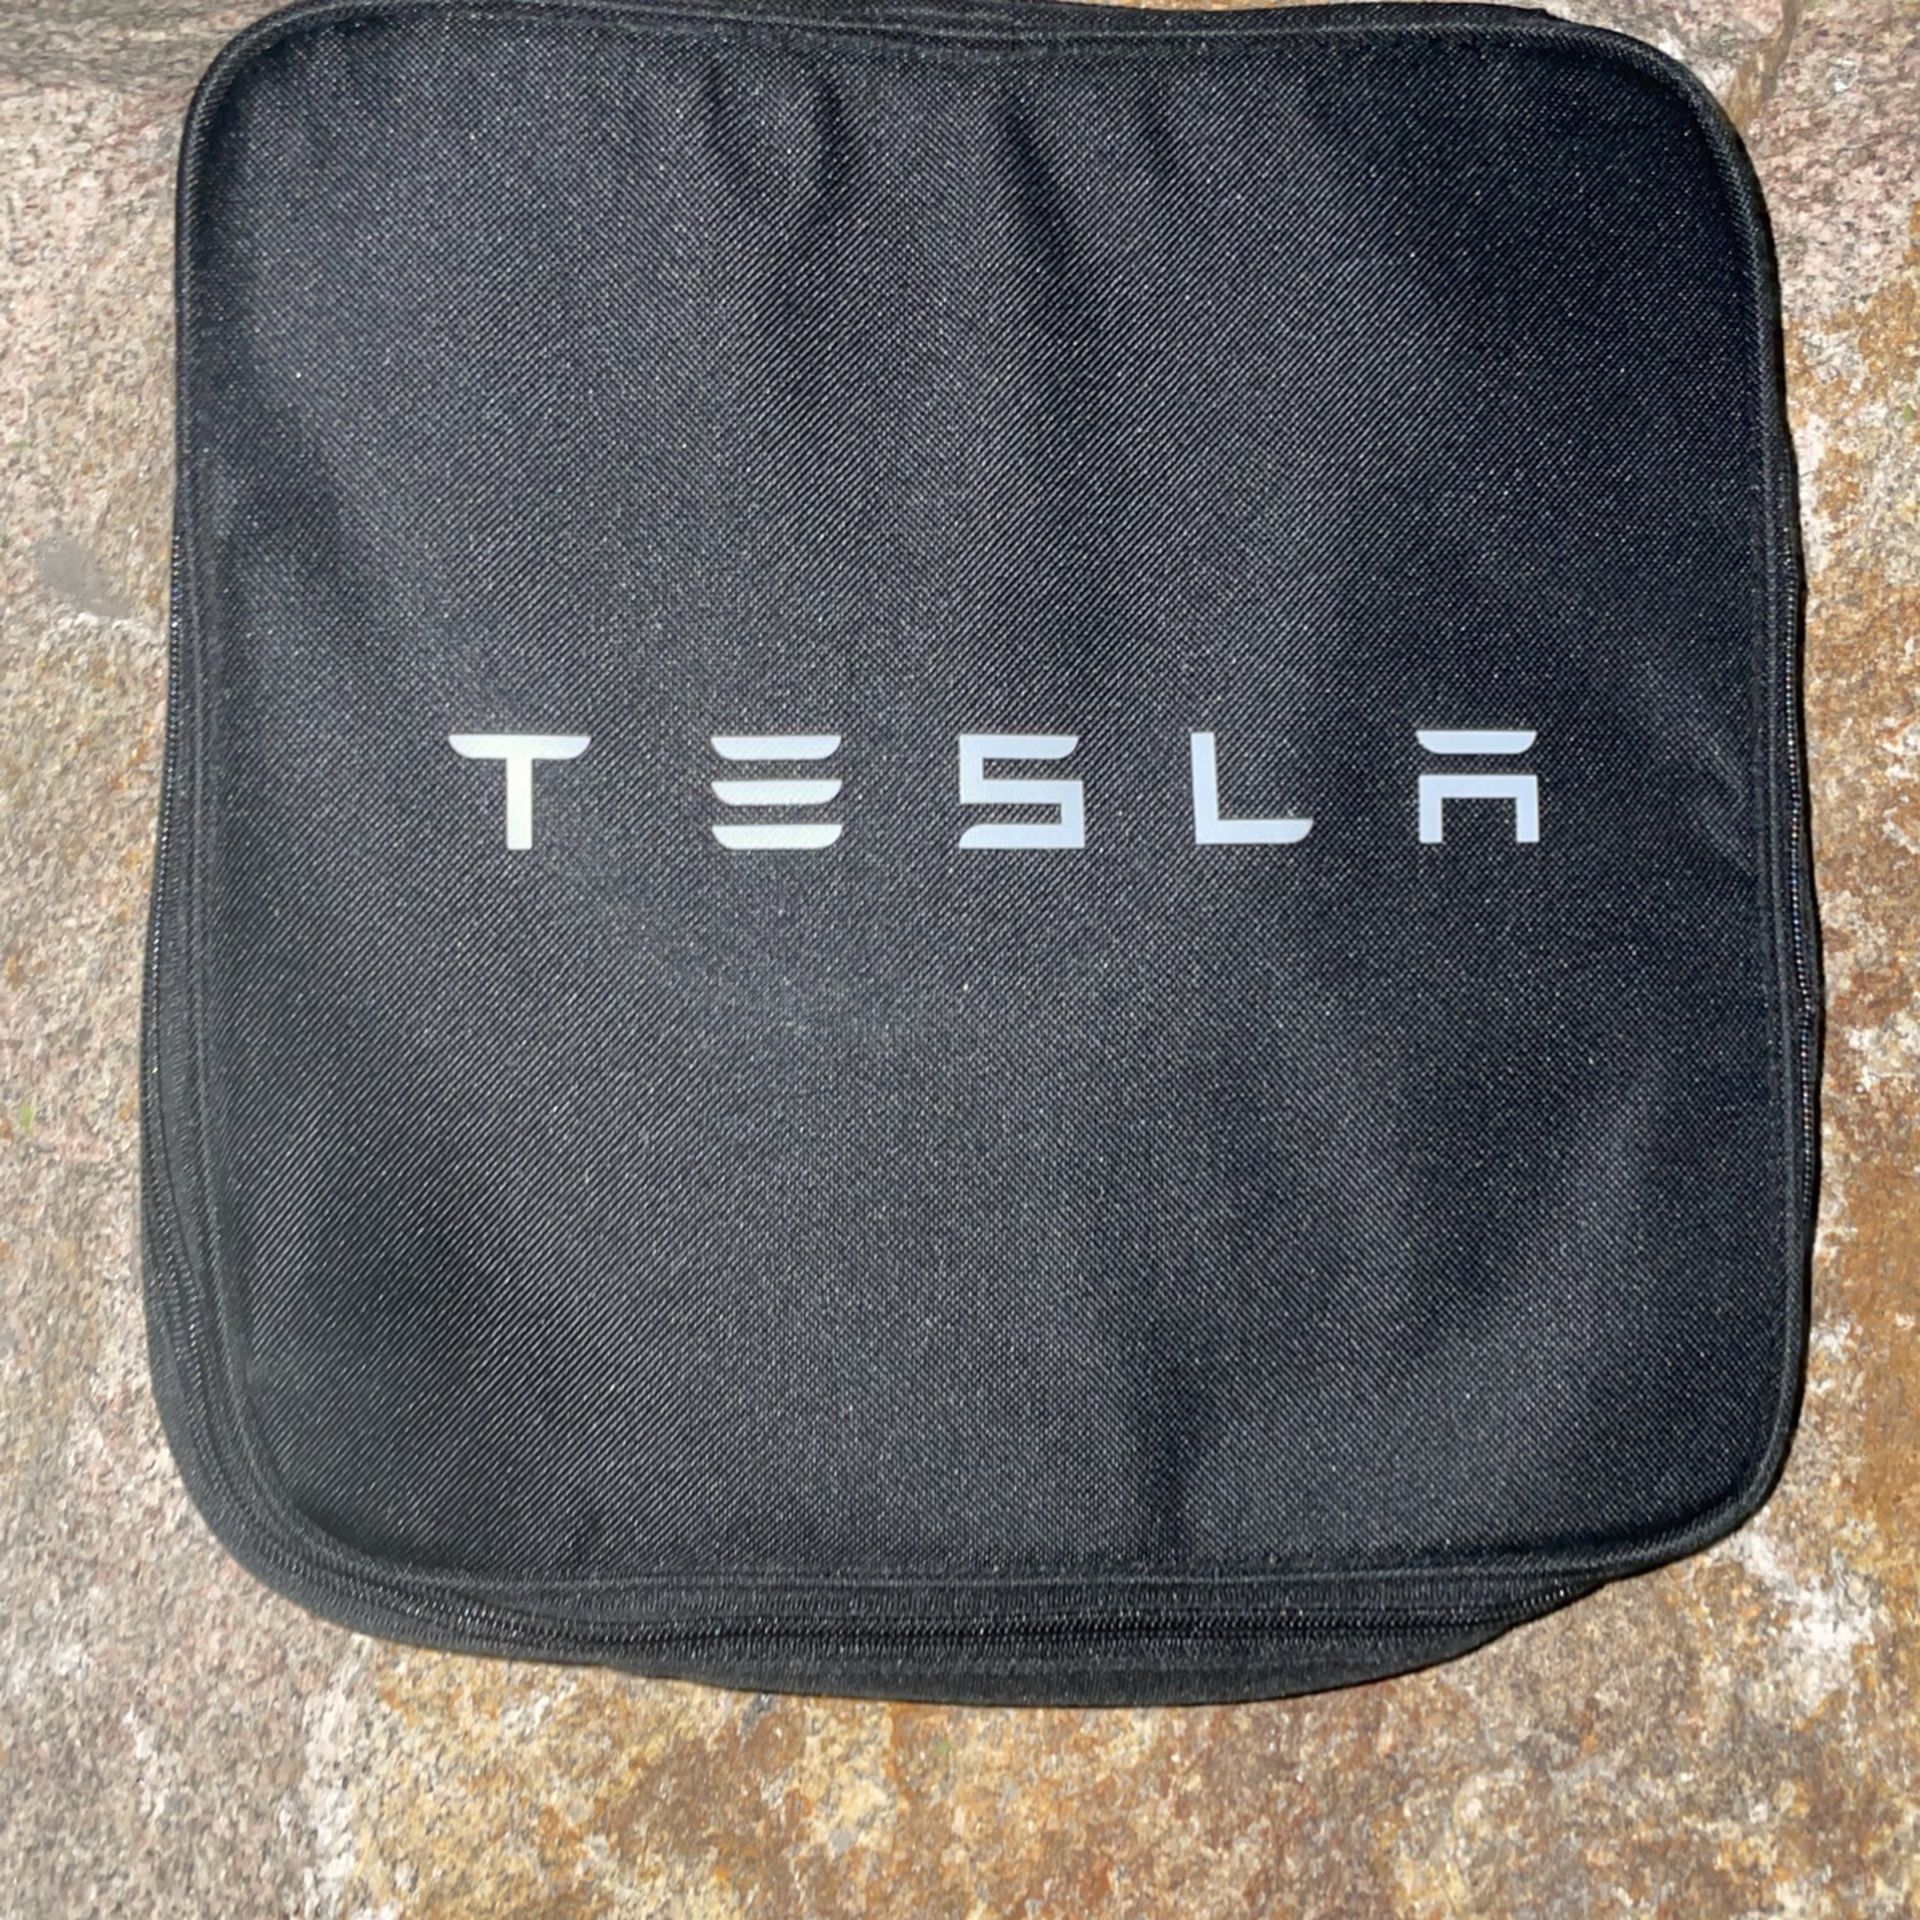 Tesla Charger